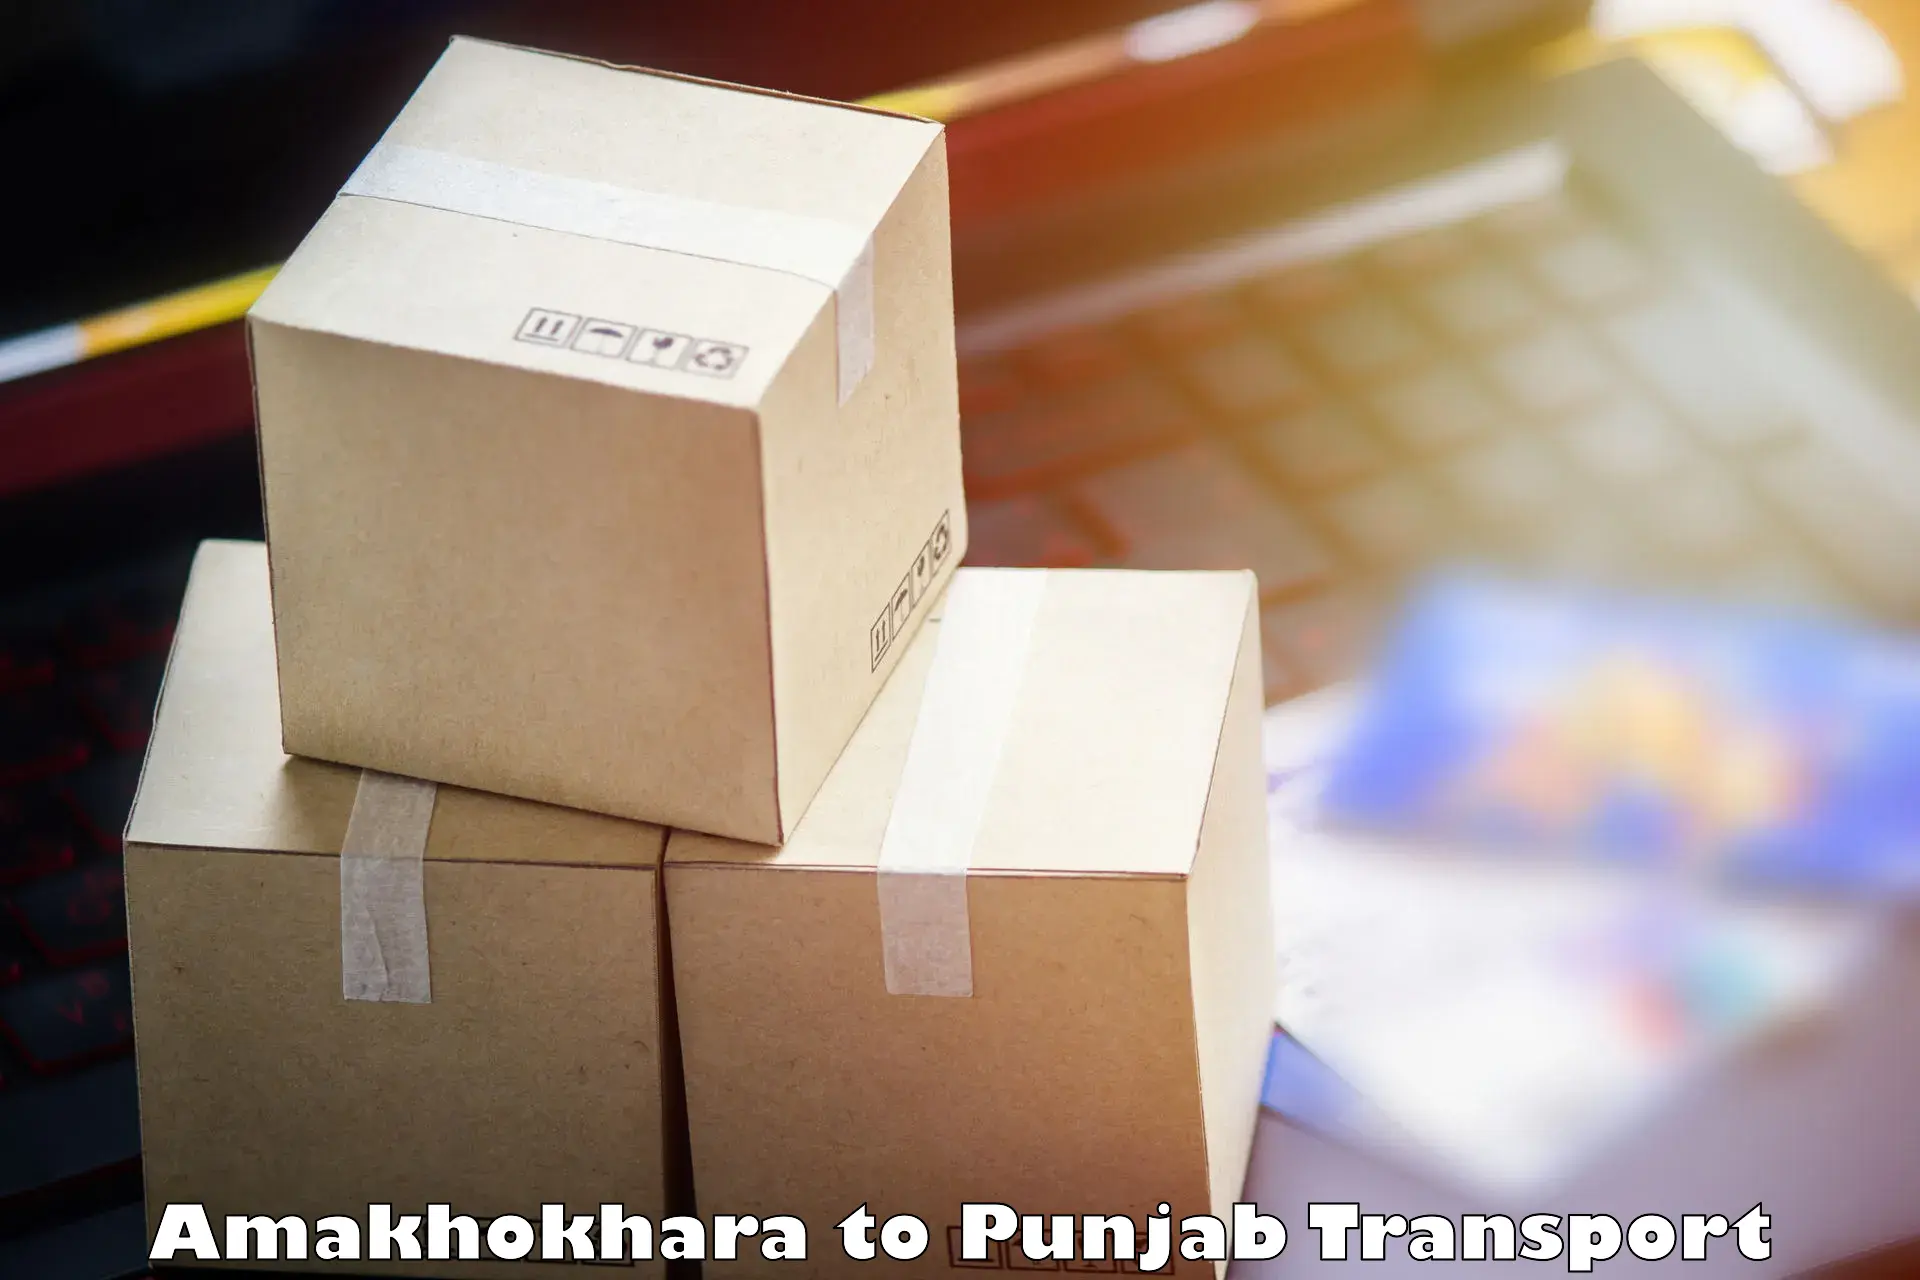 Luggage transport services Amakhokhara to Zirakpur